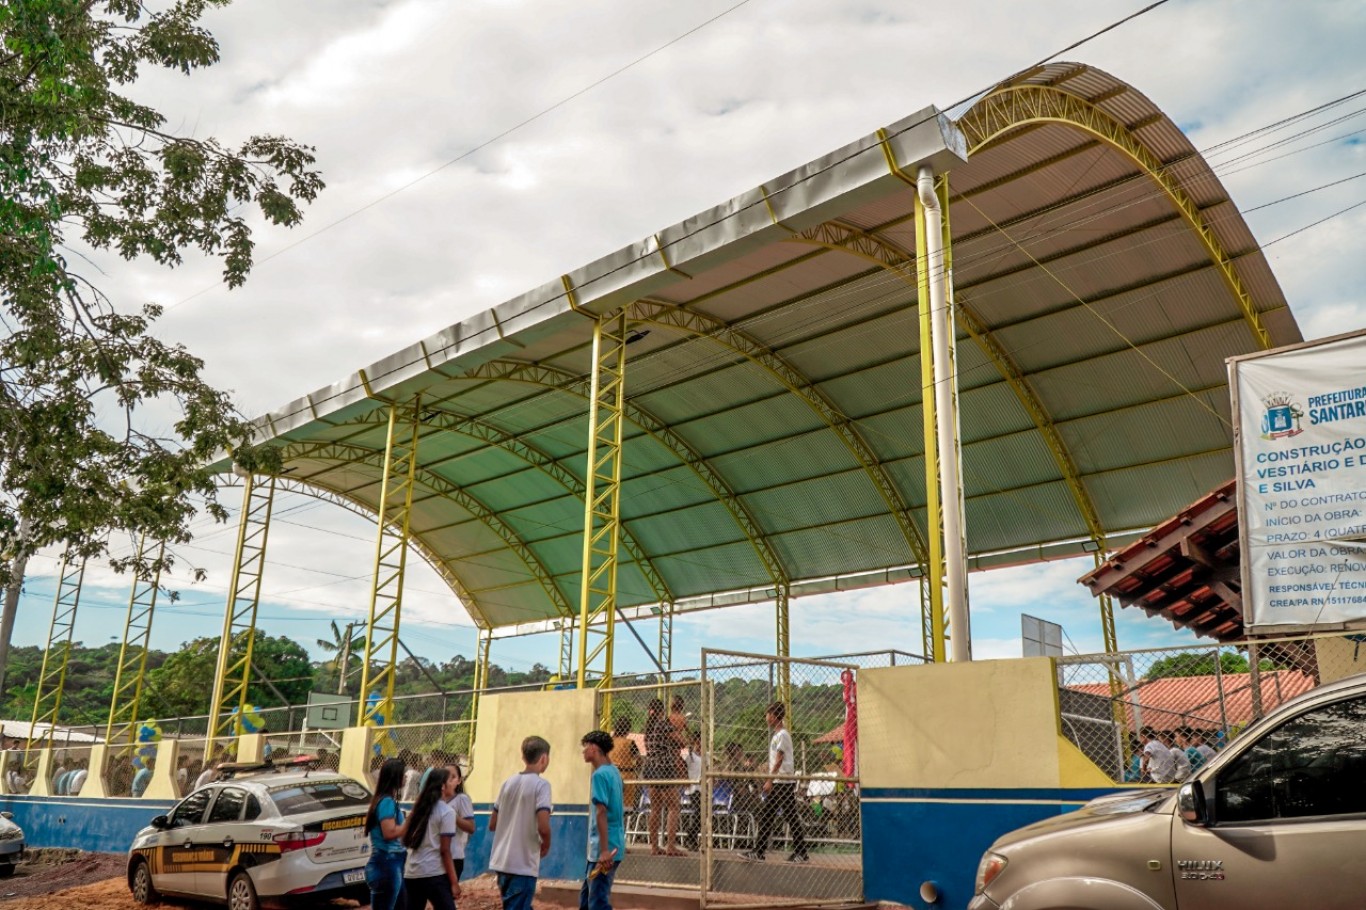 Santarém 361 anos: Prefeitura entrega quadra coberta da escola Eloína Colares e Silva no Ipanema